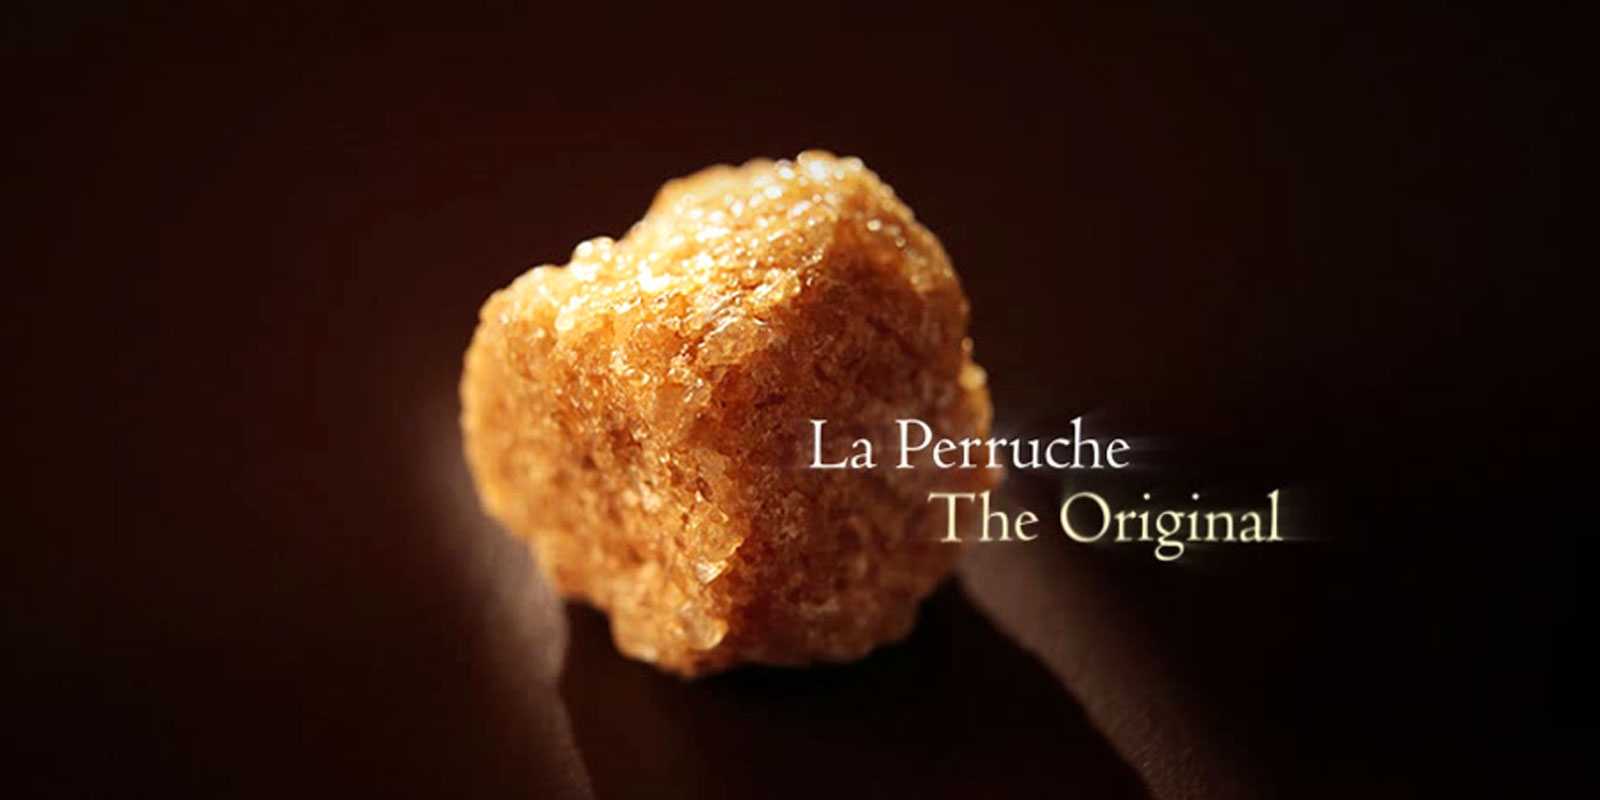 La Perruche - roersukker La Perruche er et exceptionelt produkt, med en speciel smag, der vil glaede alle dem, der saetter pris pa fin og sofistikeret smag. Ganske enkelt fremmaner det ren og skaer nydelse i dine sanser. La Perruche kommer i uregelmaessige sukkerknalder i hvid eller gyldenbrun. Krystalform i shakeren ogsa kendt som cassonade.